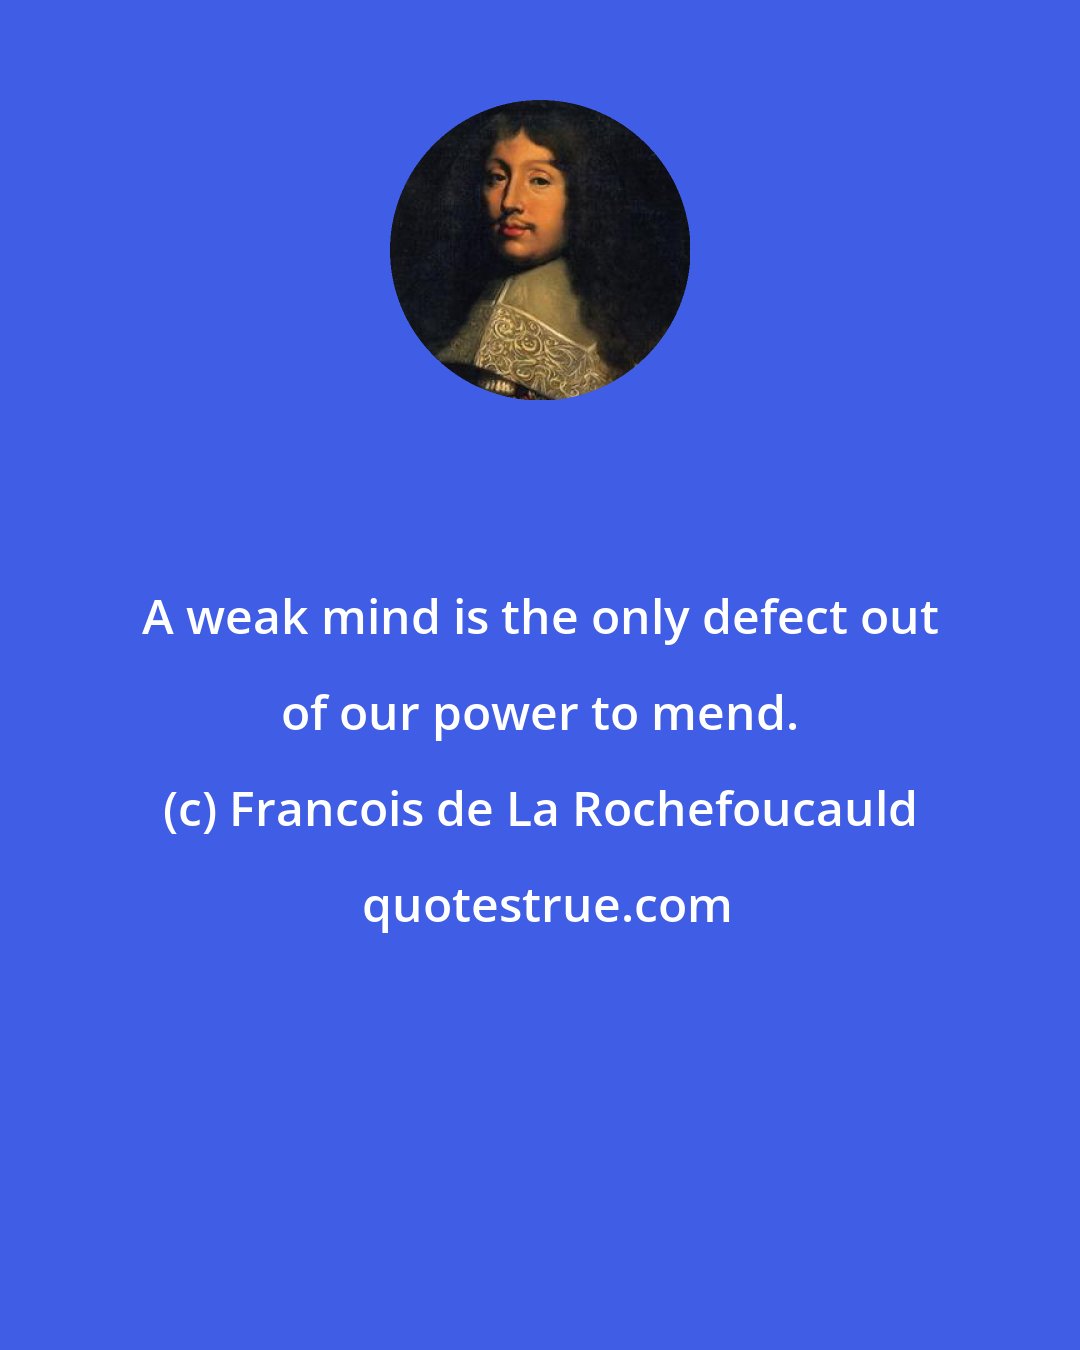 Francois de La Rochefoucauld: A weak mind is the only defect out of our power to mend.